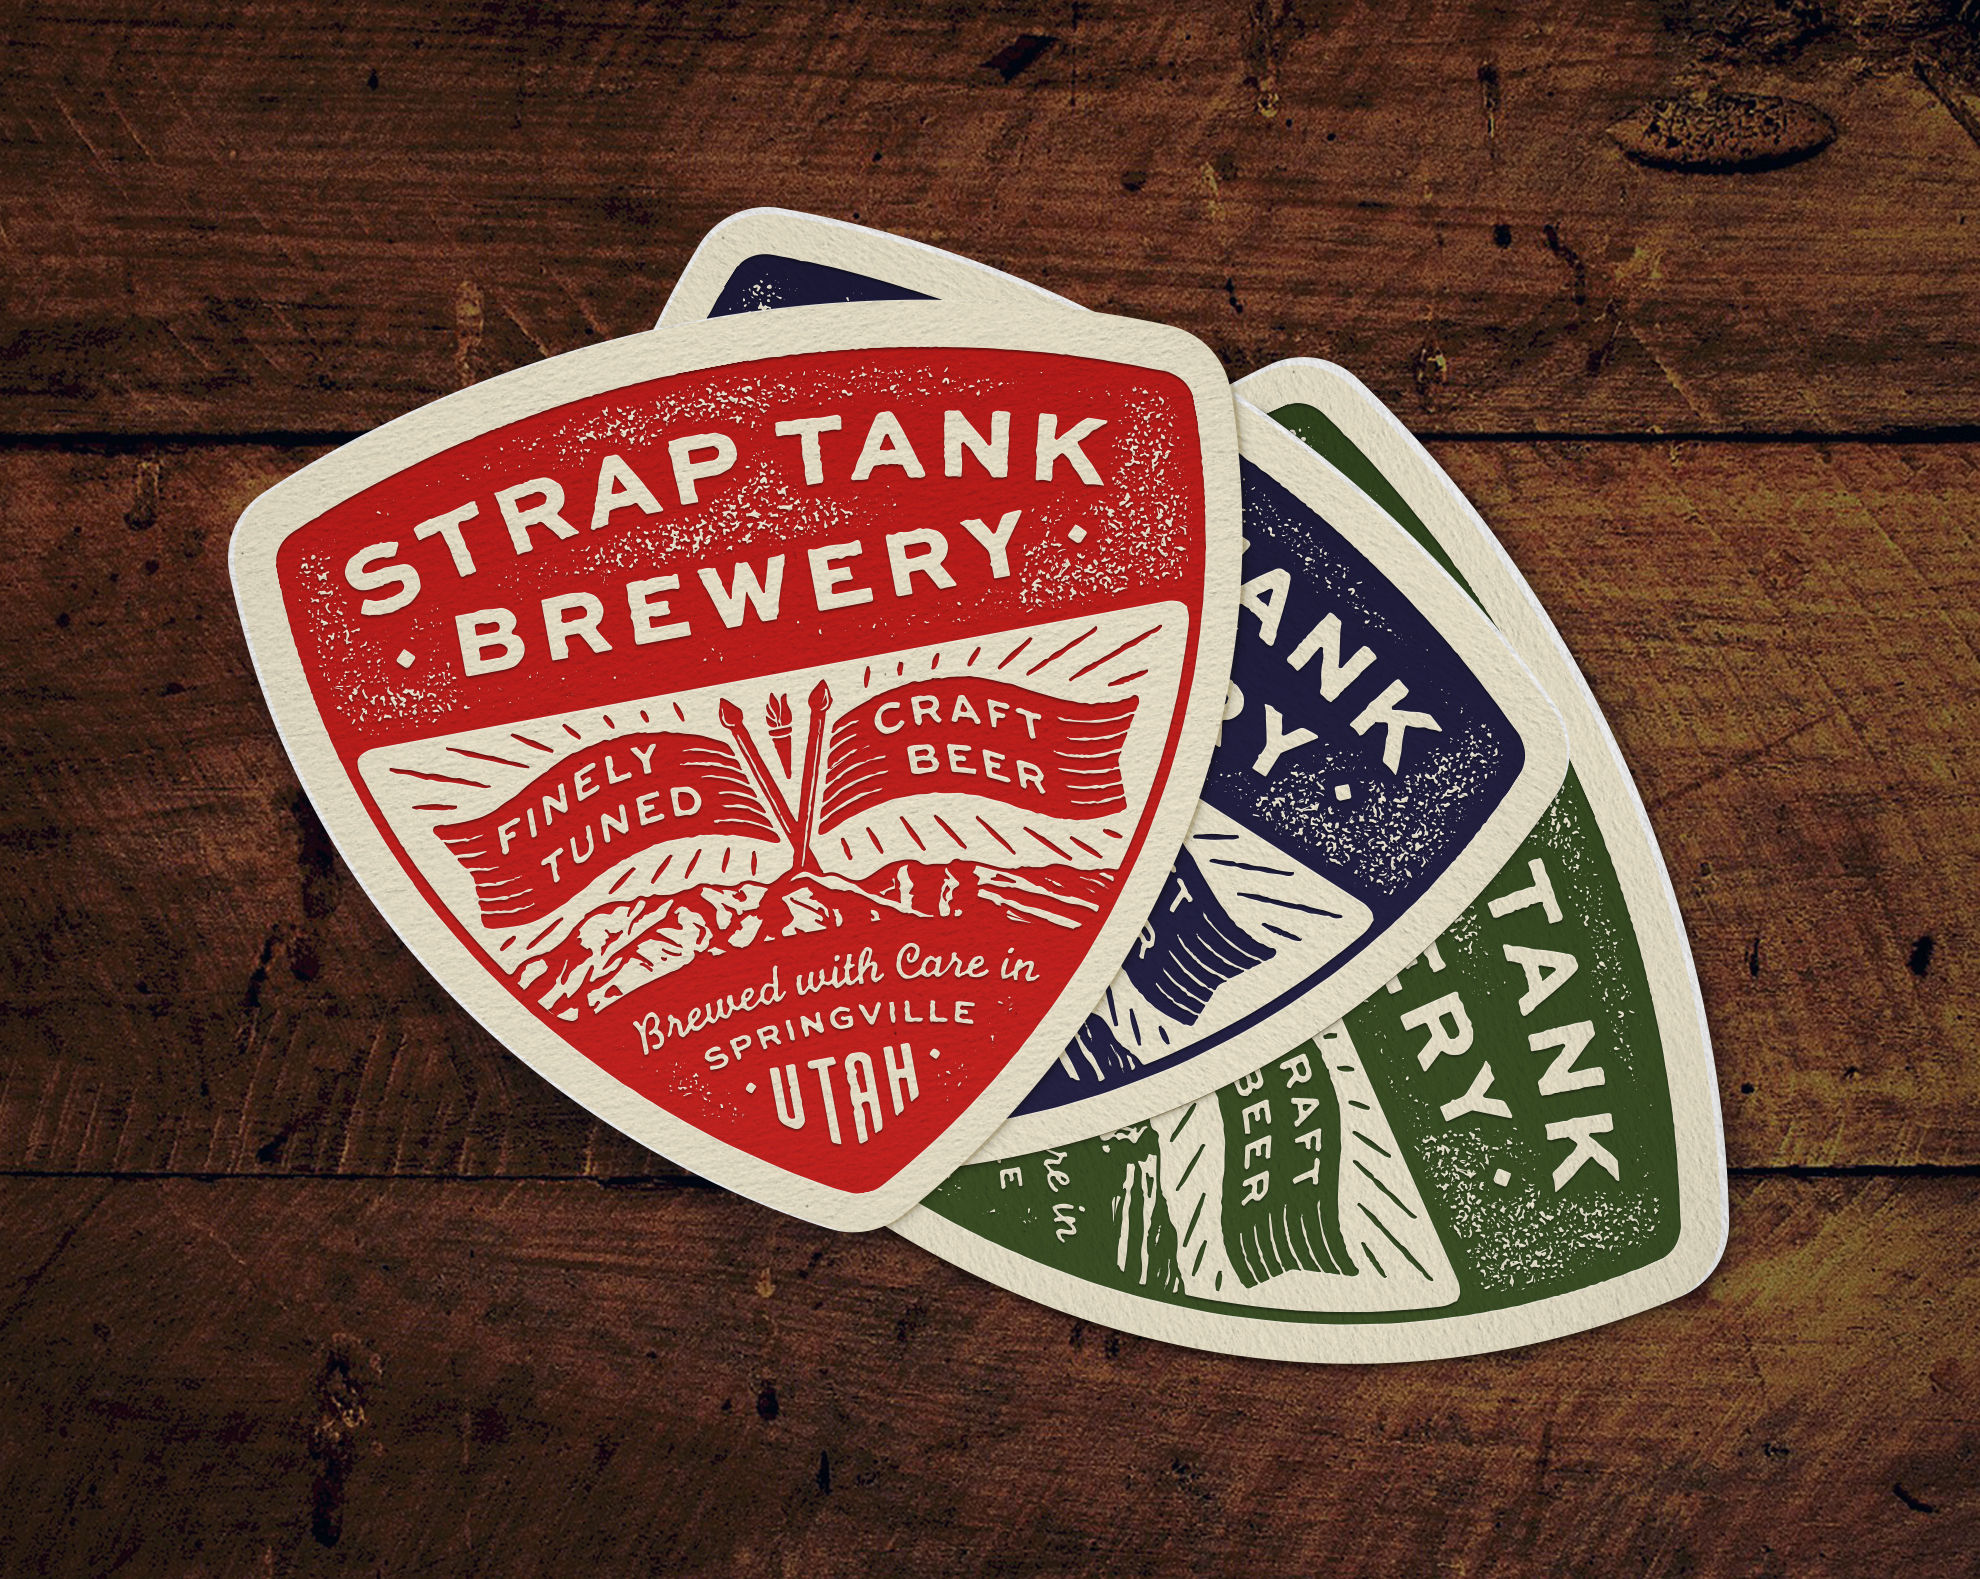 Beer & Branding: Strap Tank Brewery